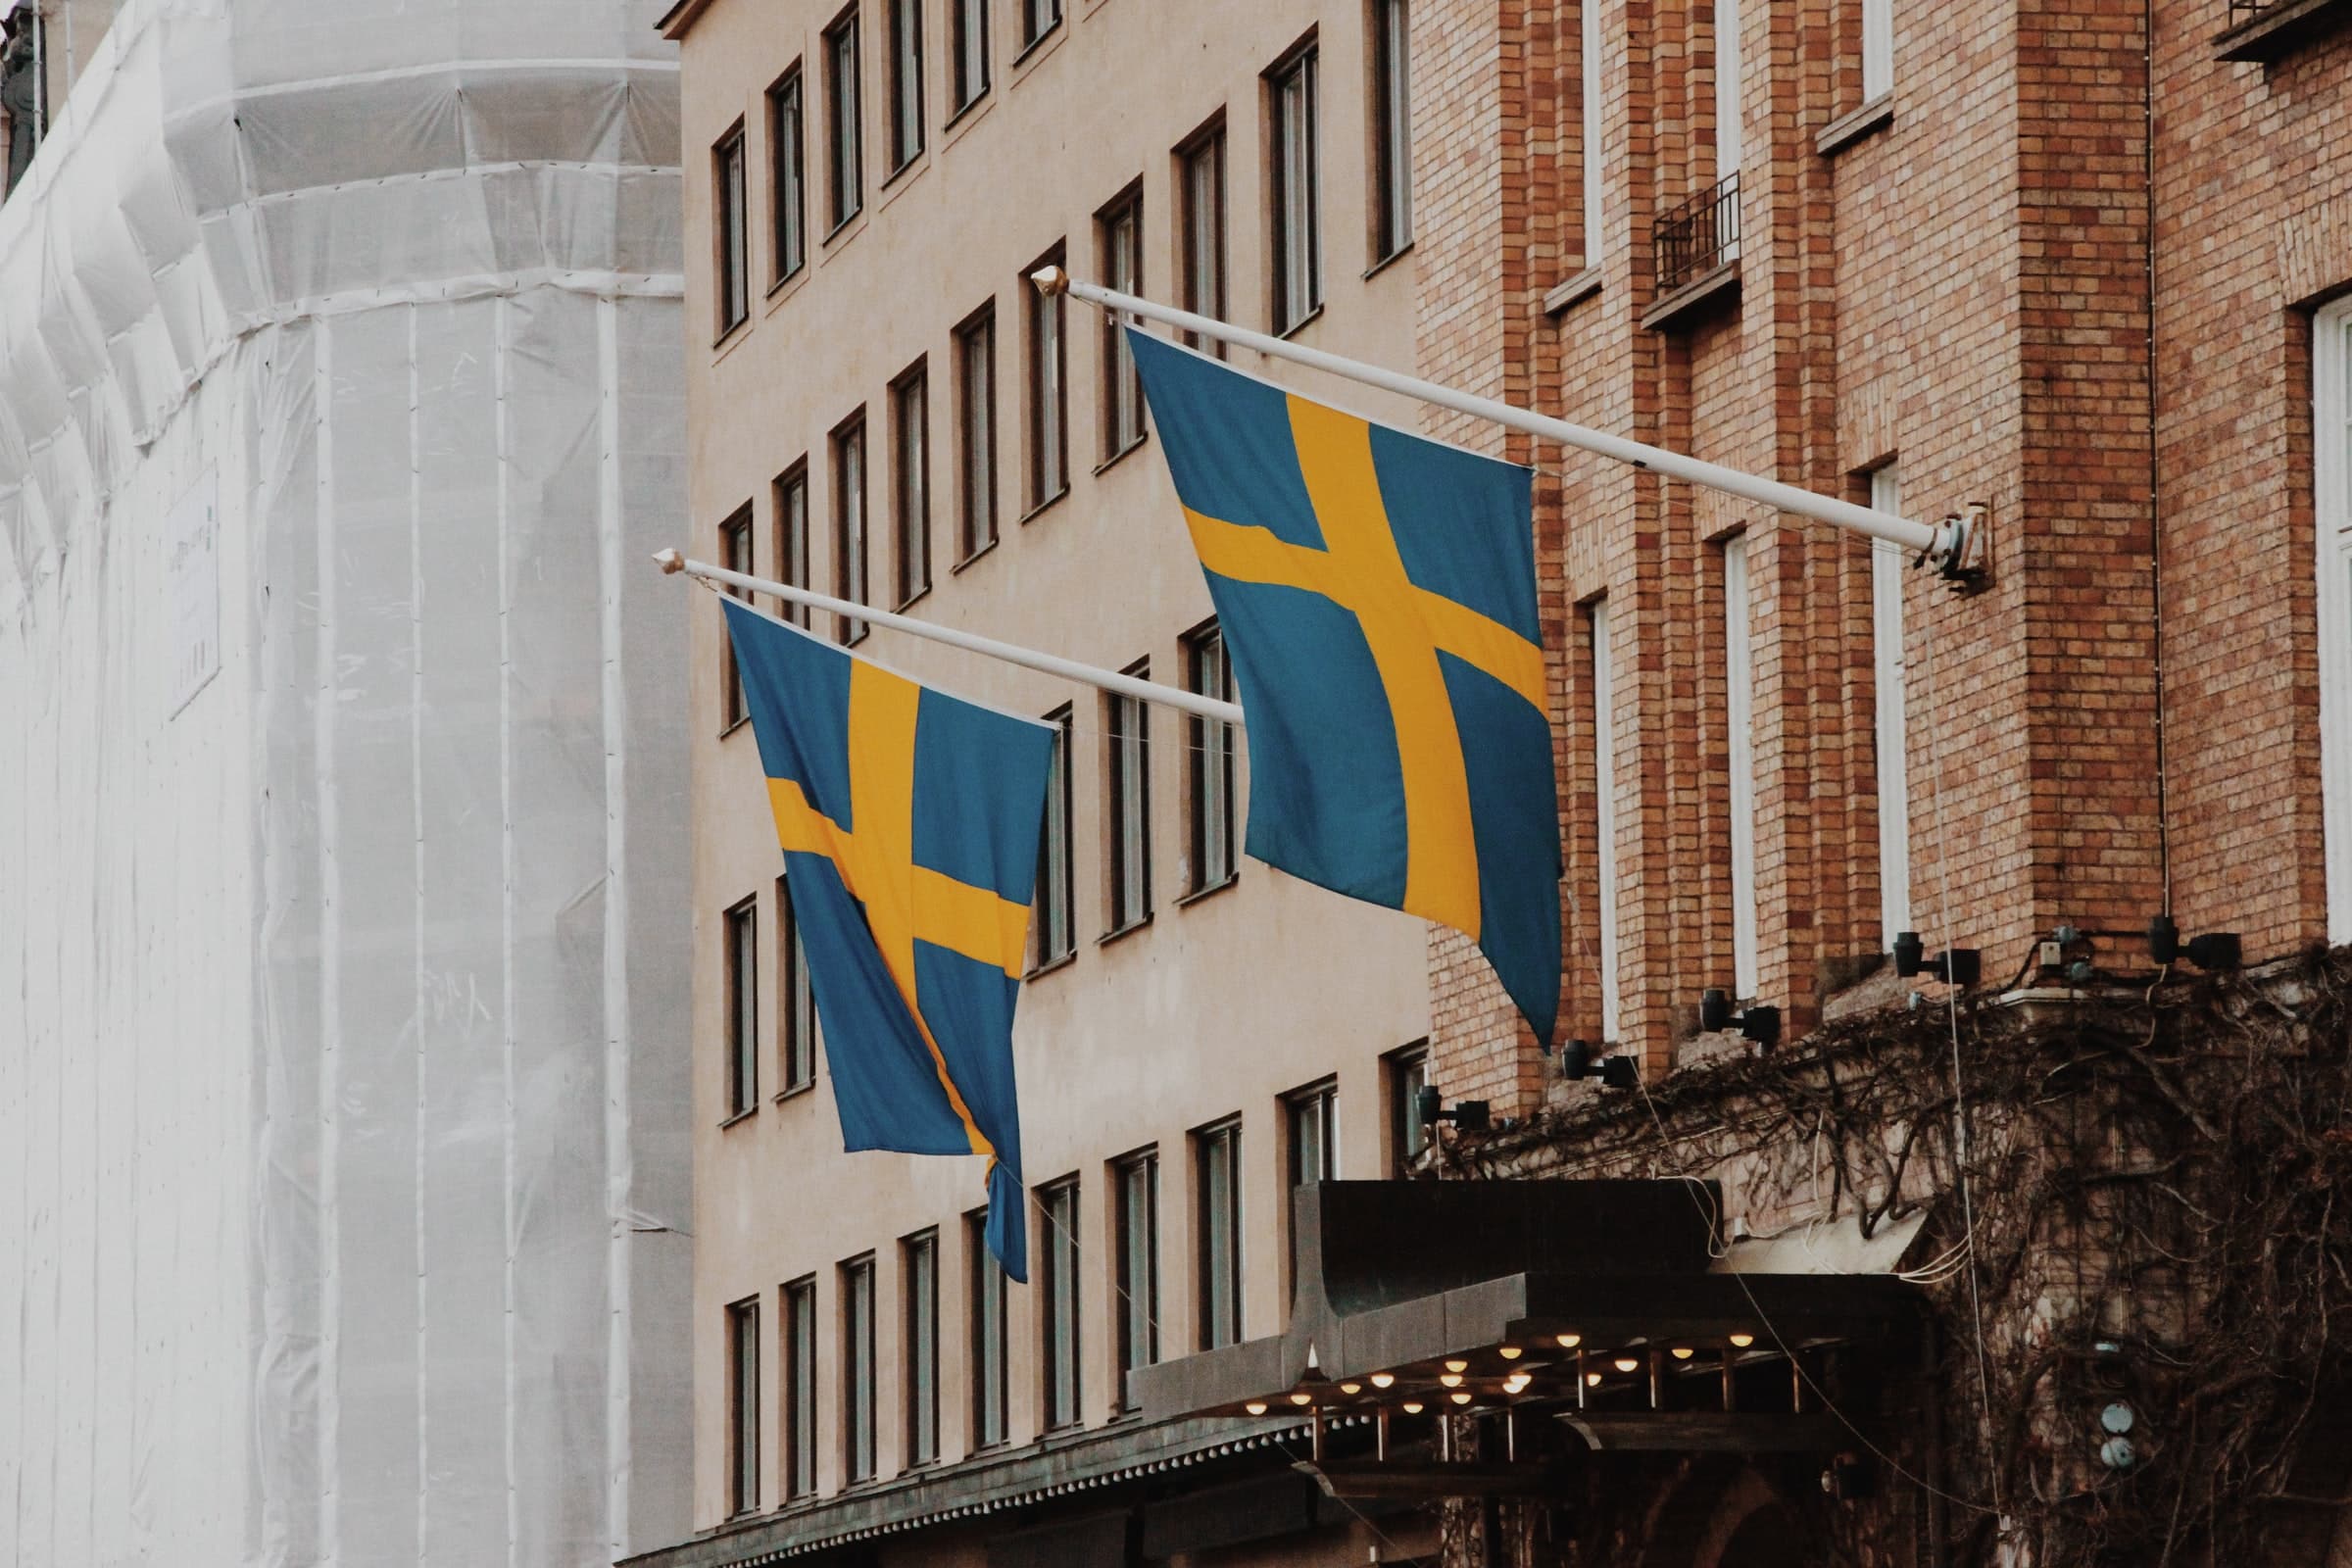 Photographie de deux drapeaux suédois sur un bâtiment.